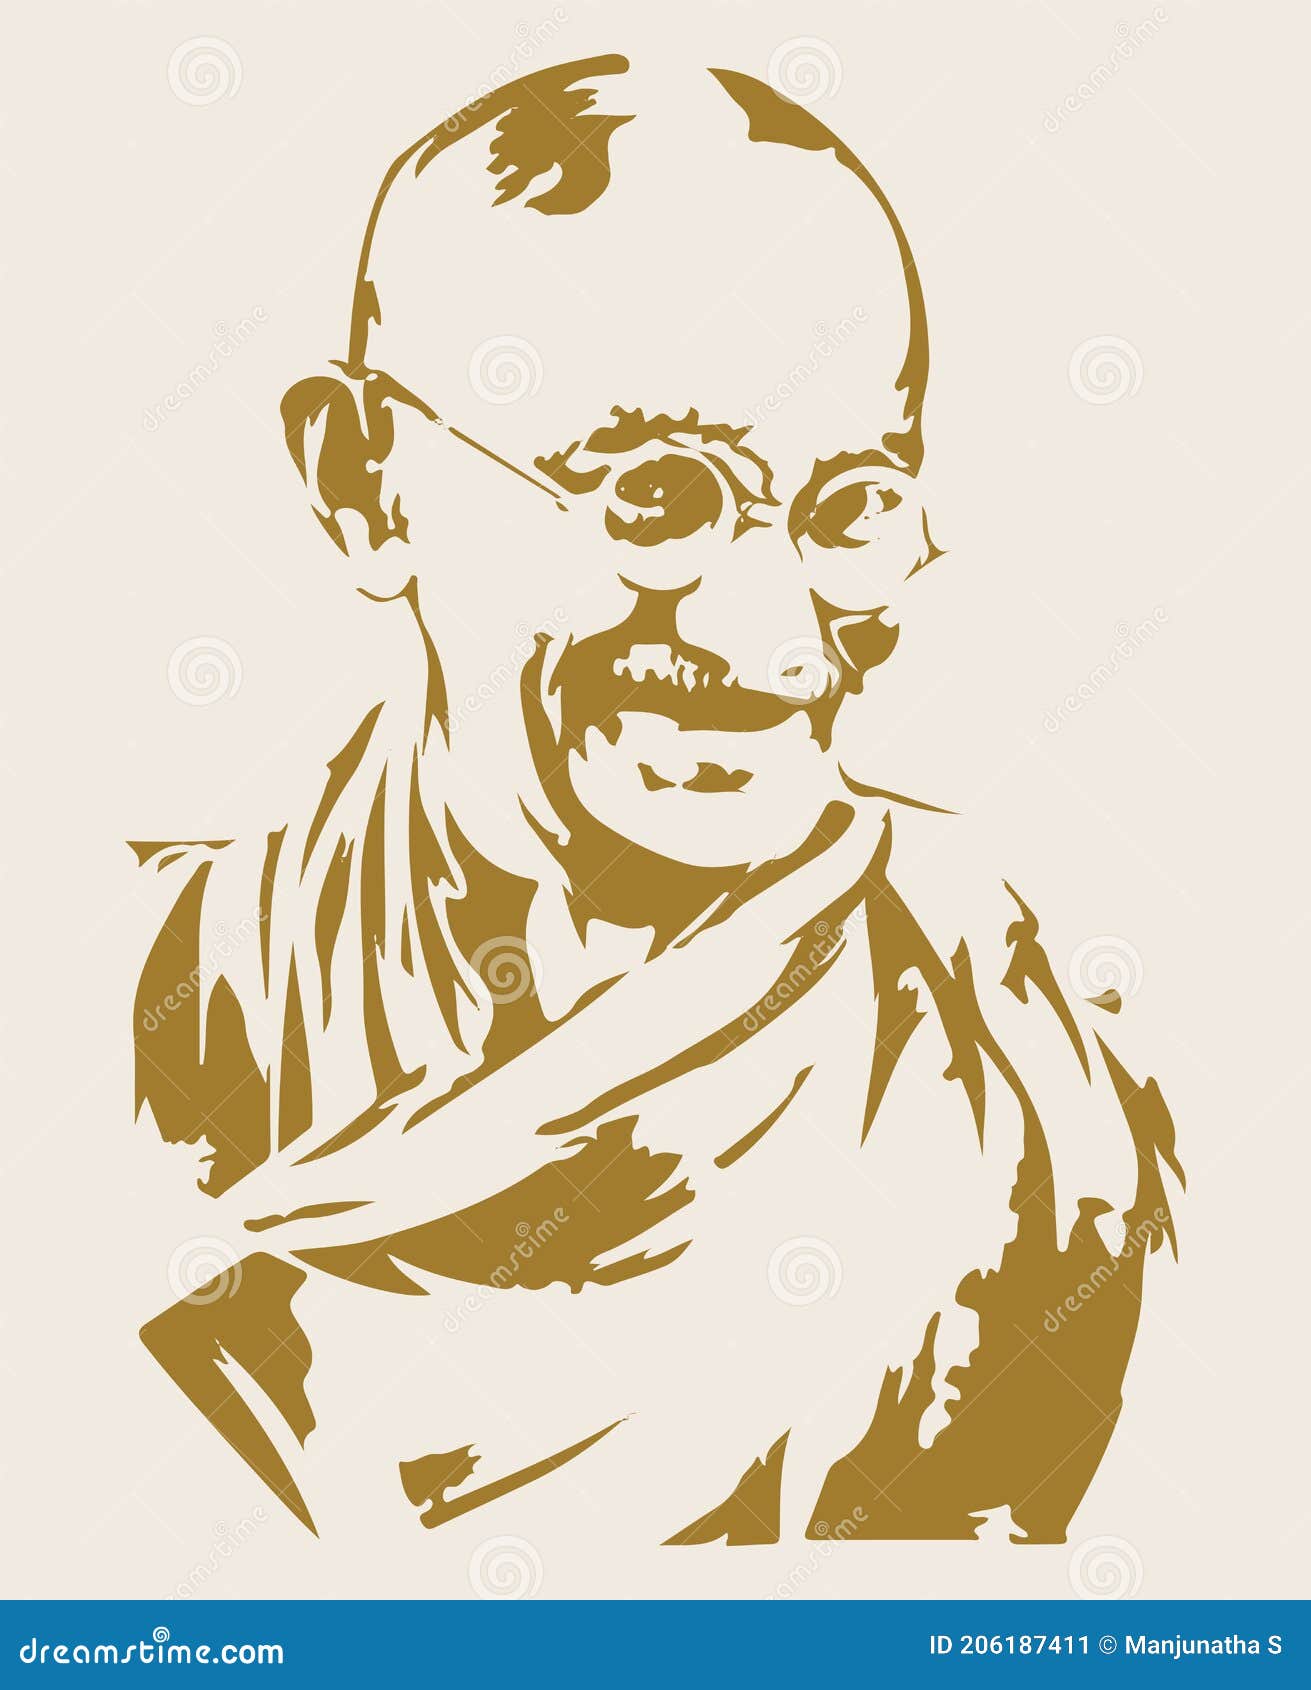 Gandhi Ji Images  Free Download on Freepik